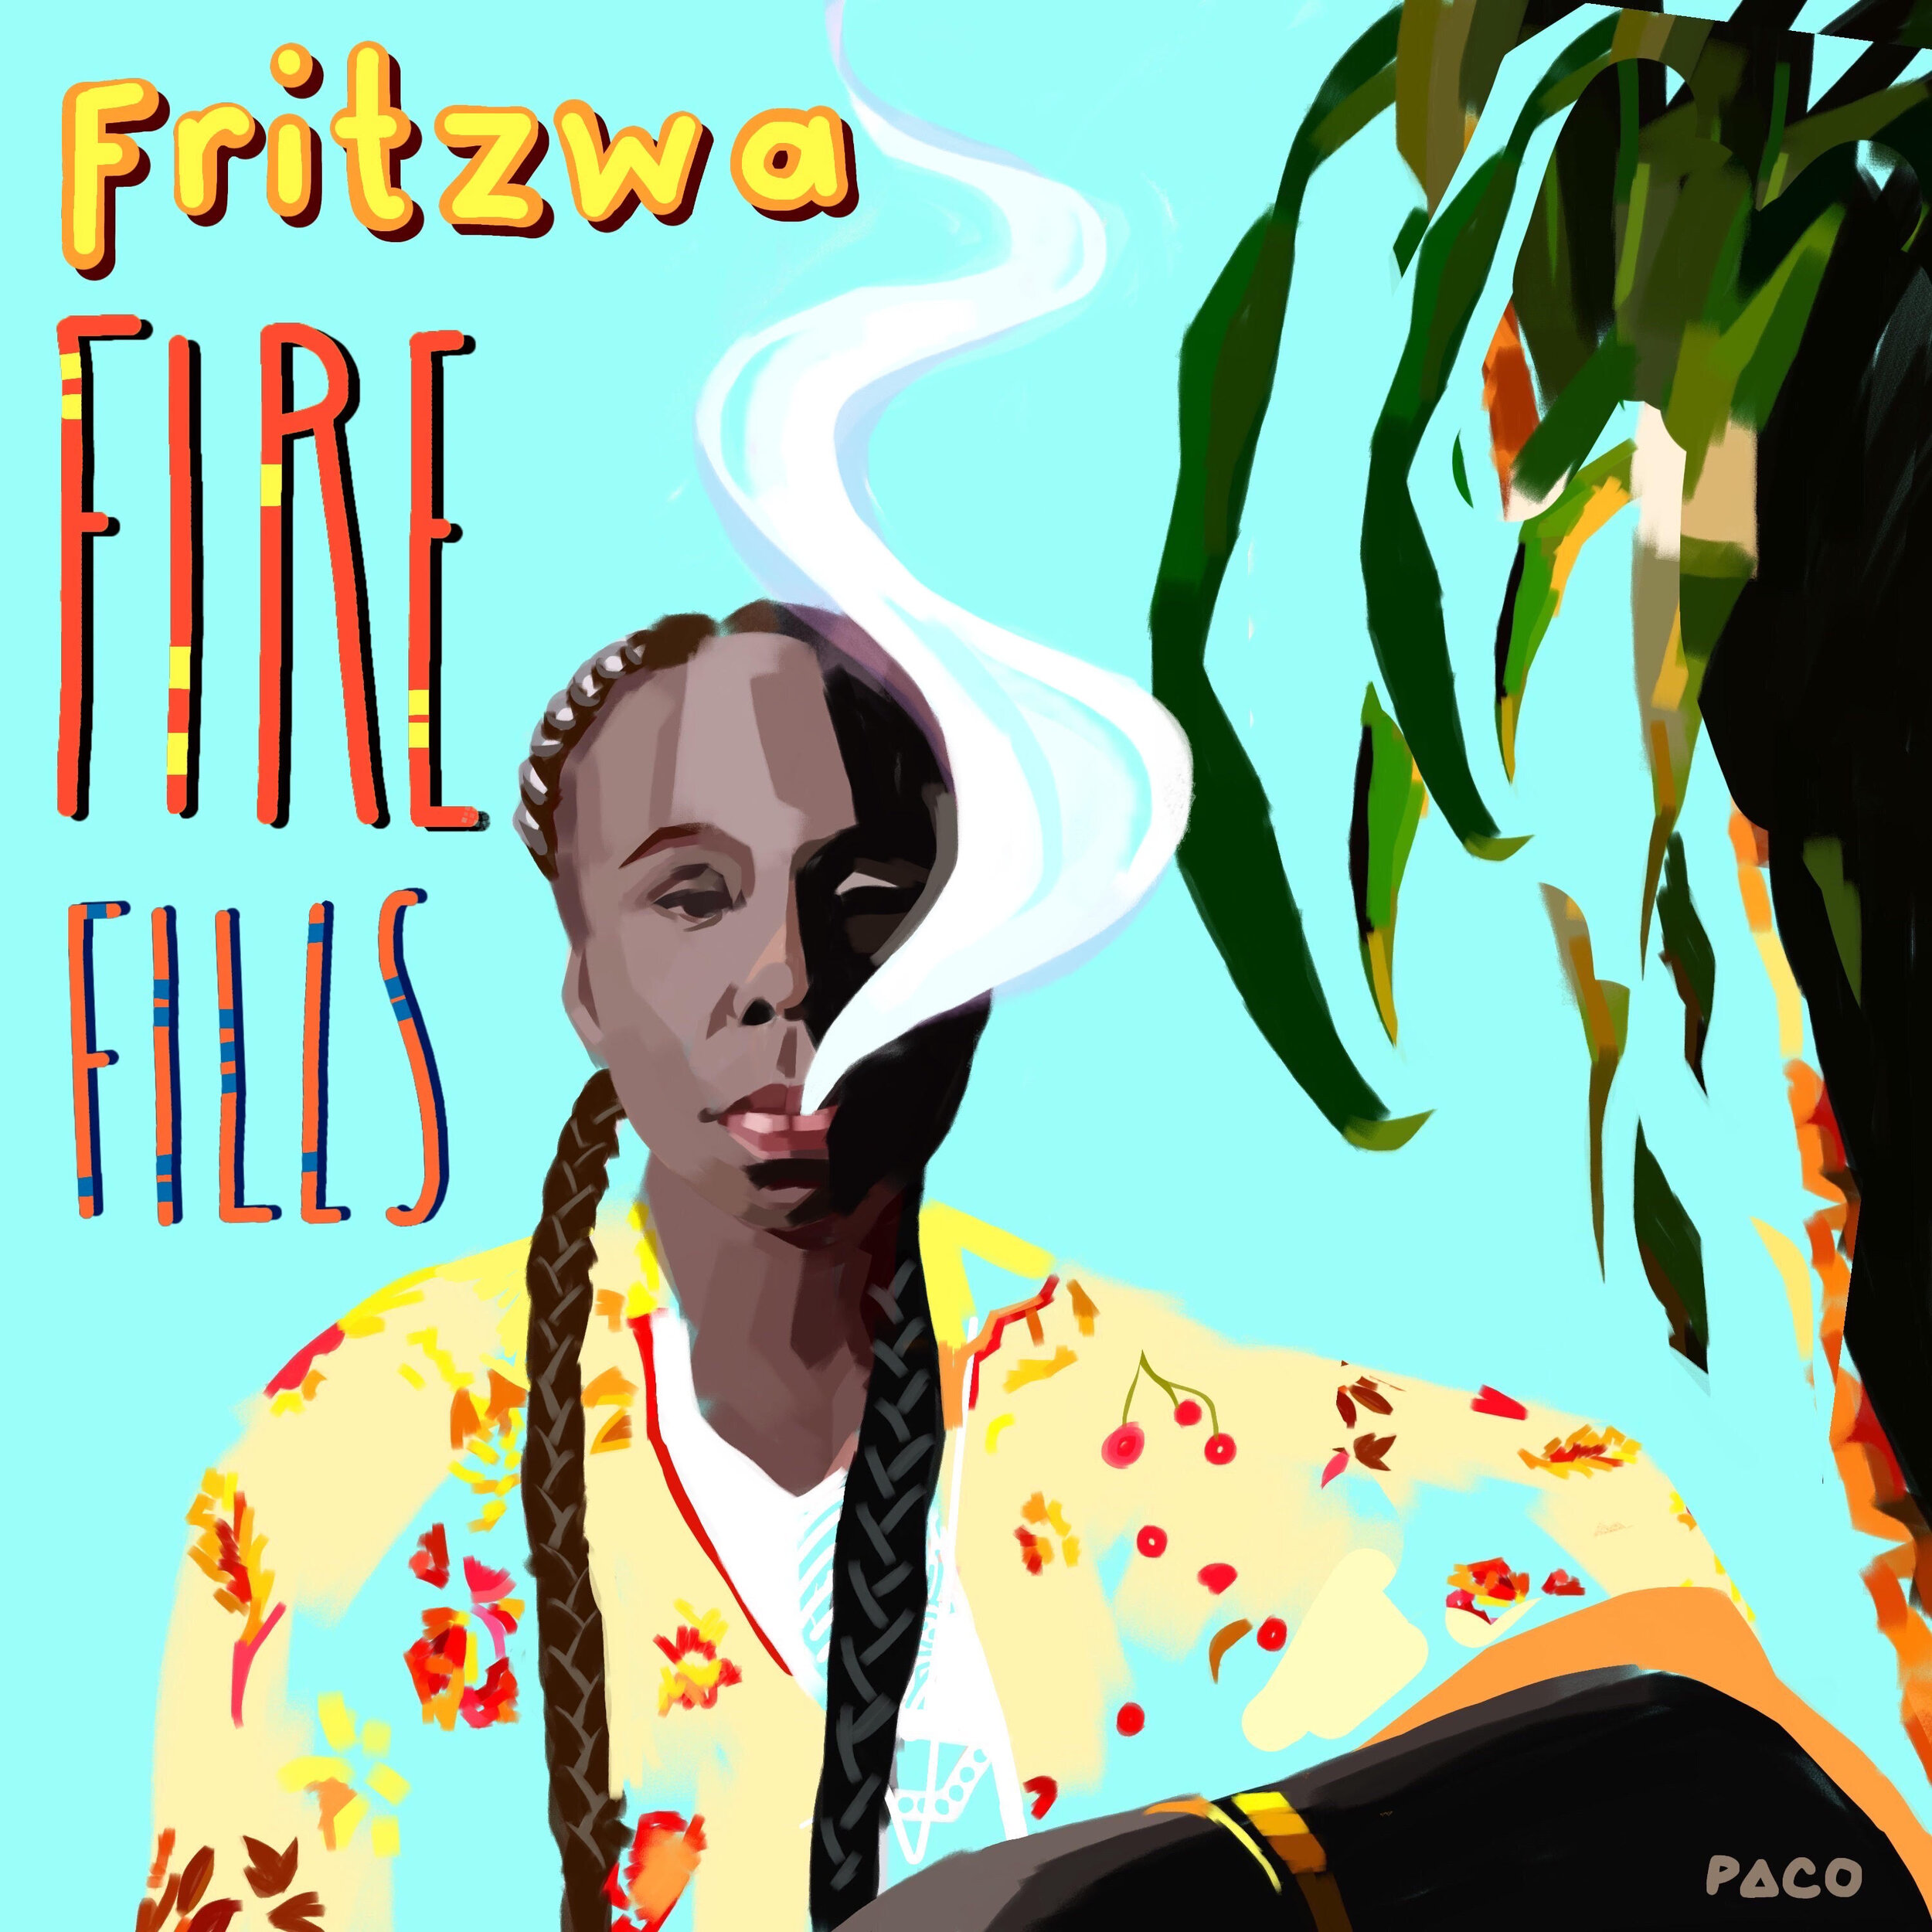 FireFills1.jpg